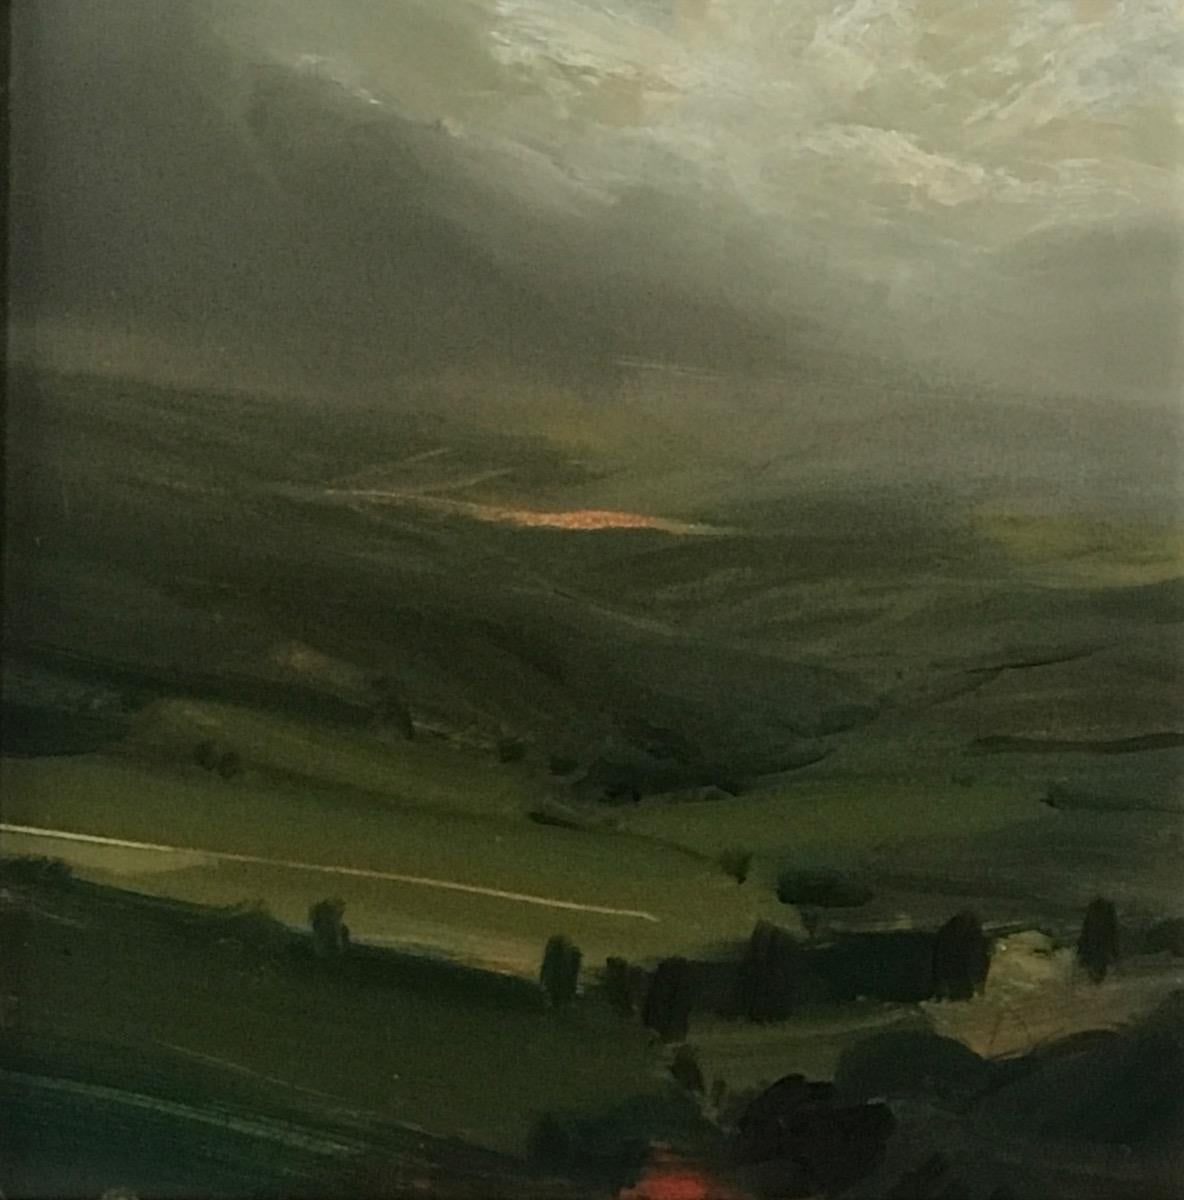 James Naughton Landscape Painting - Destination, Original painting, Landscape, Nature, Birds view, Lake, Hills 